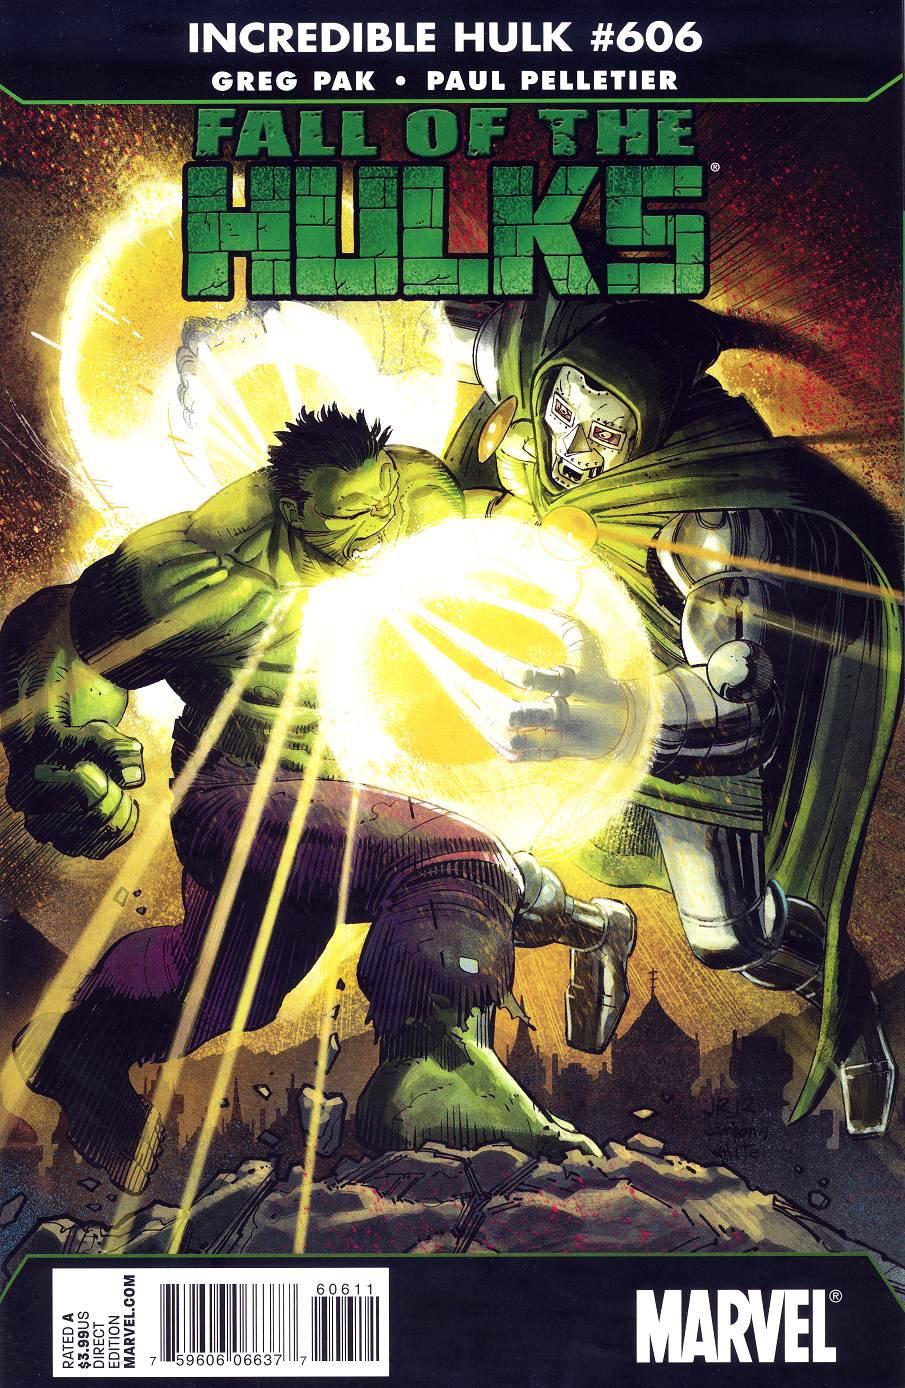 The Incredible Hulk Vol. 1 #606